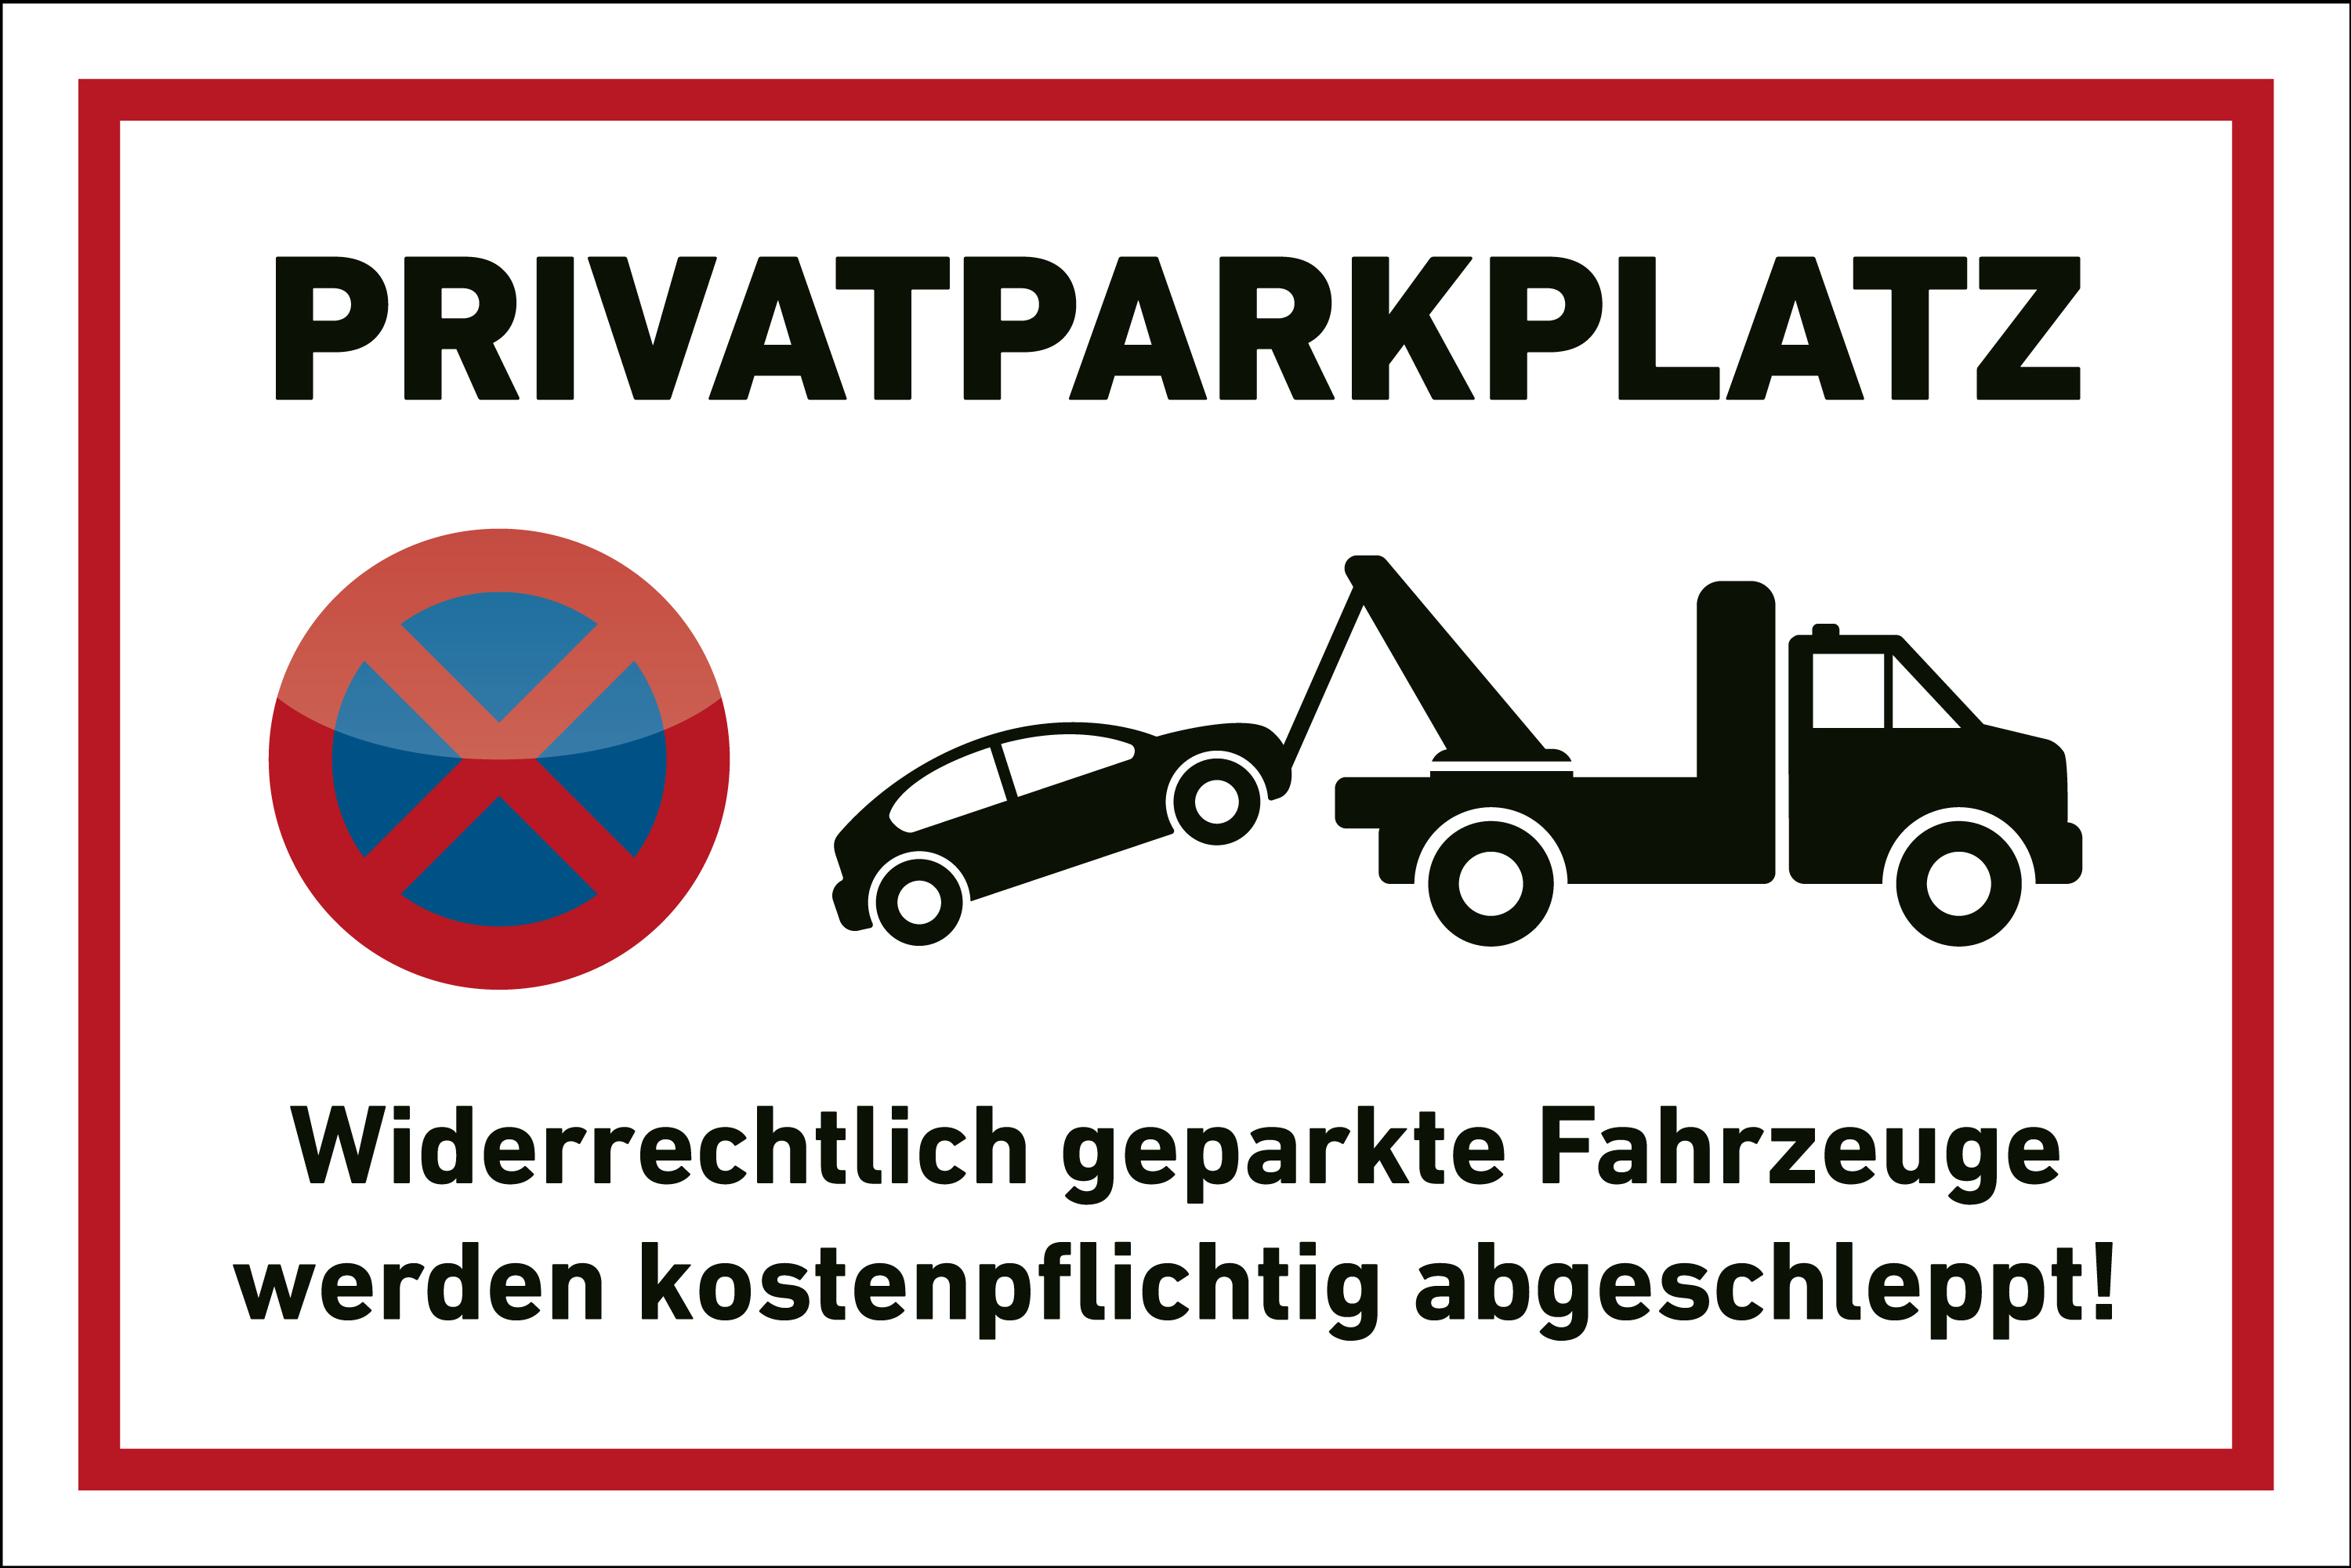 Parkplatz Aufkleber "Privatparkplatz" Abschleppen Privatparkplatz